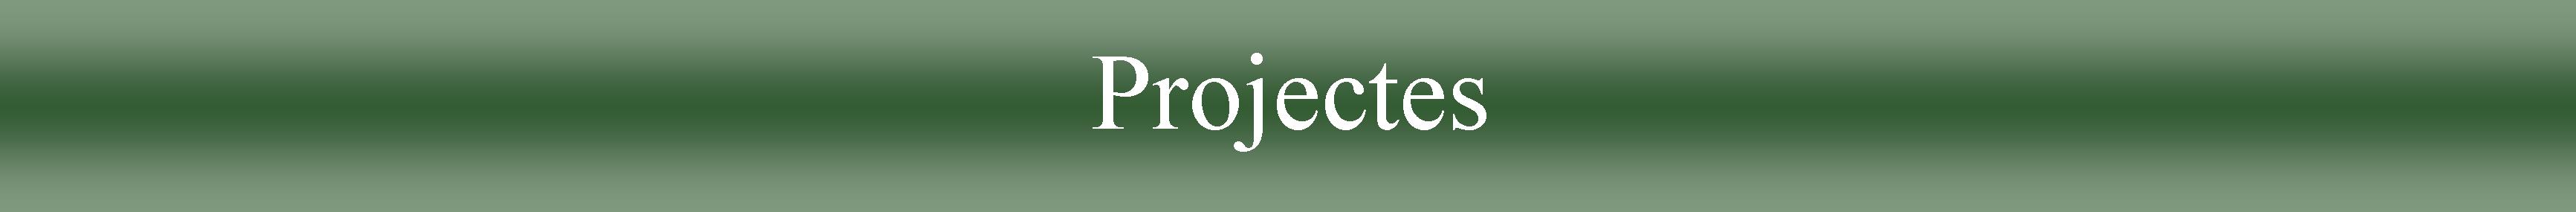 Proyectos.cat.jpg